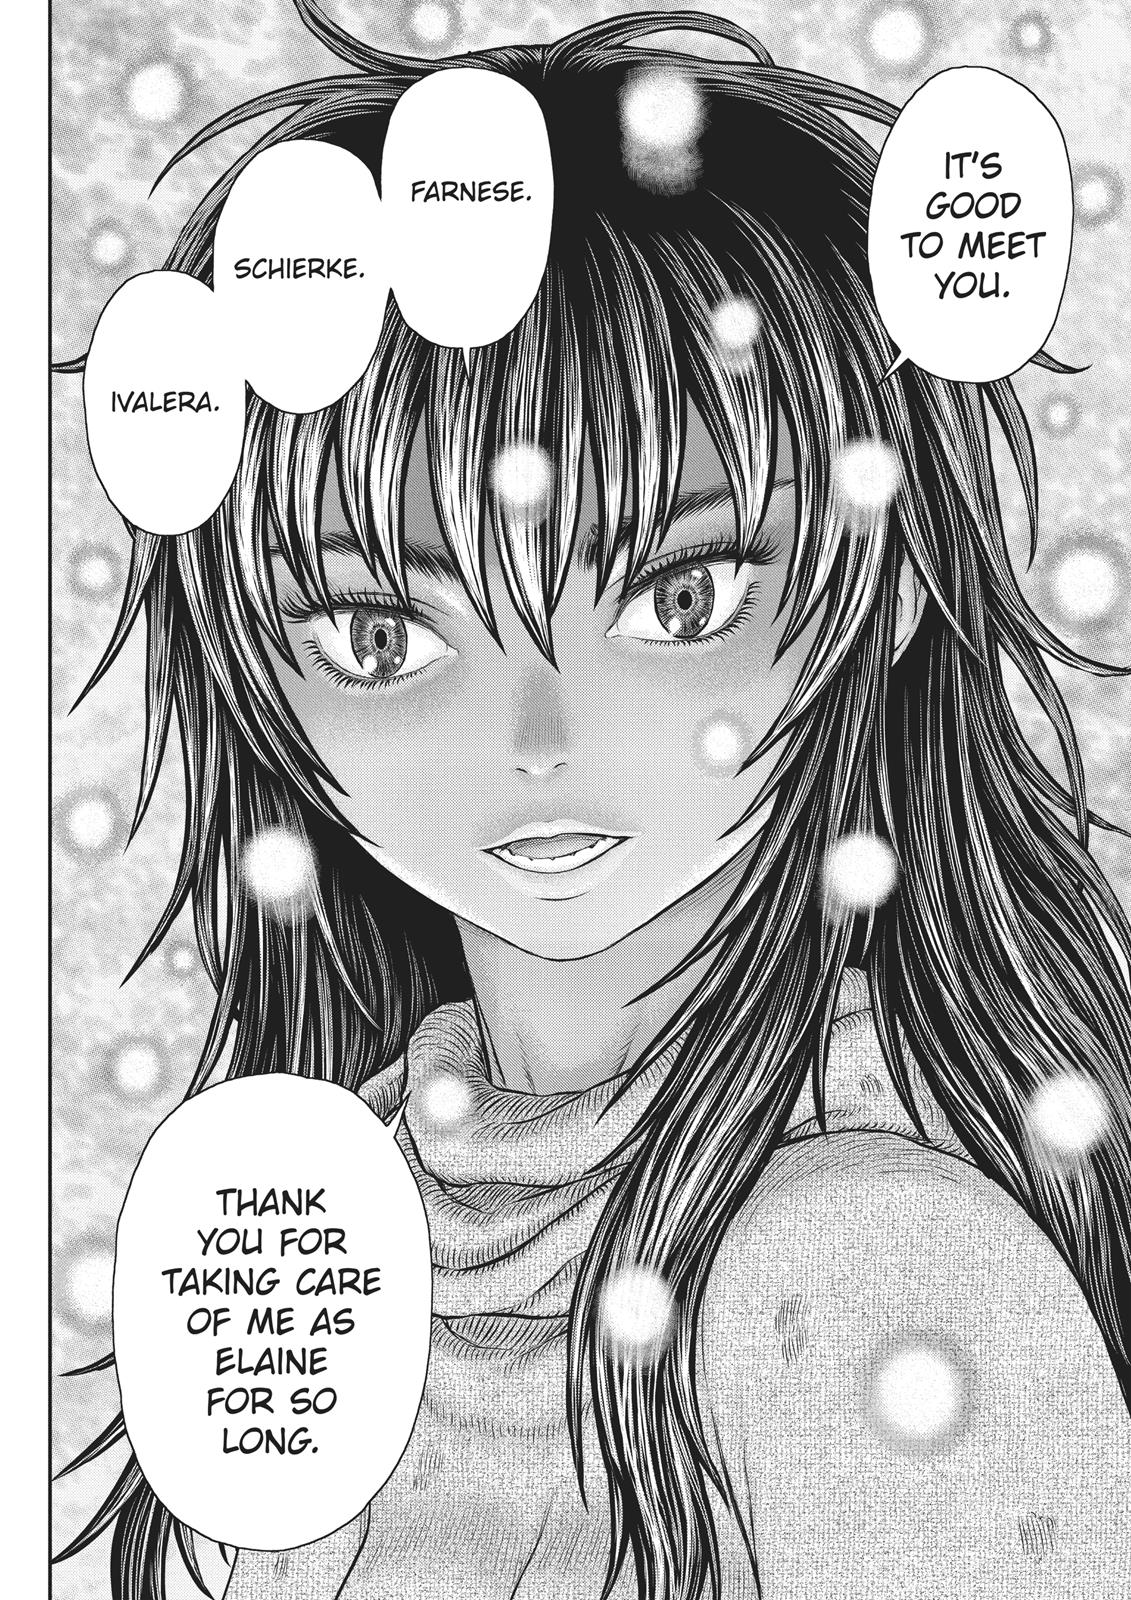 Berserk Manga Chapter 355 image 04